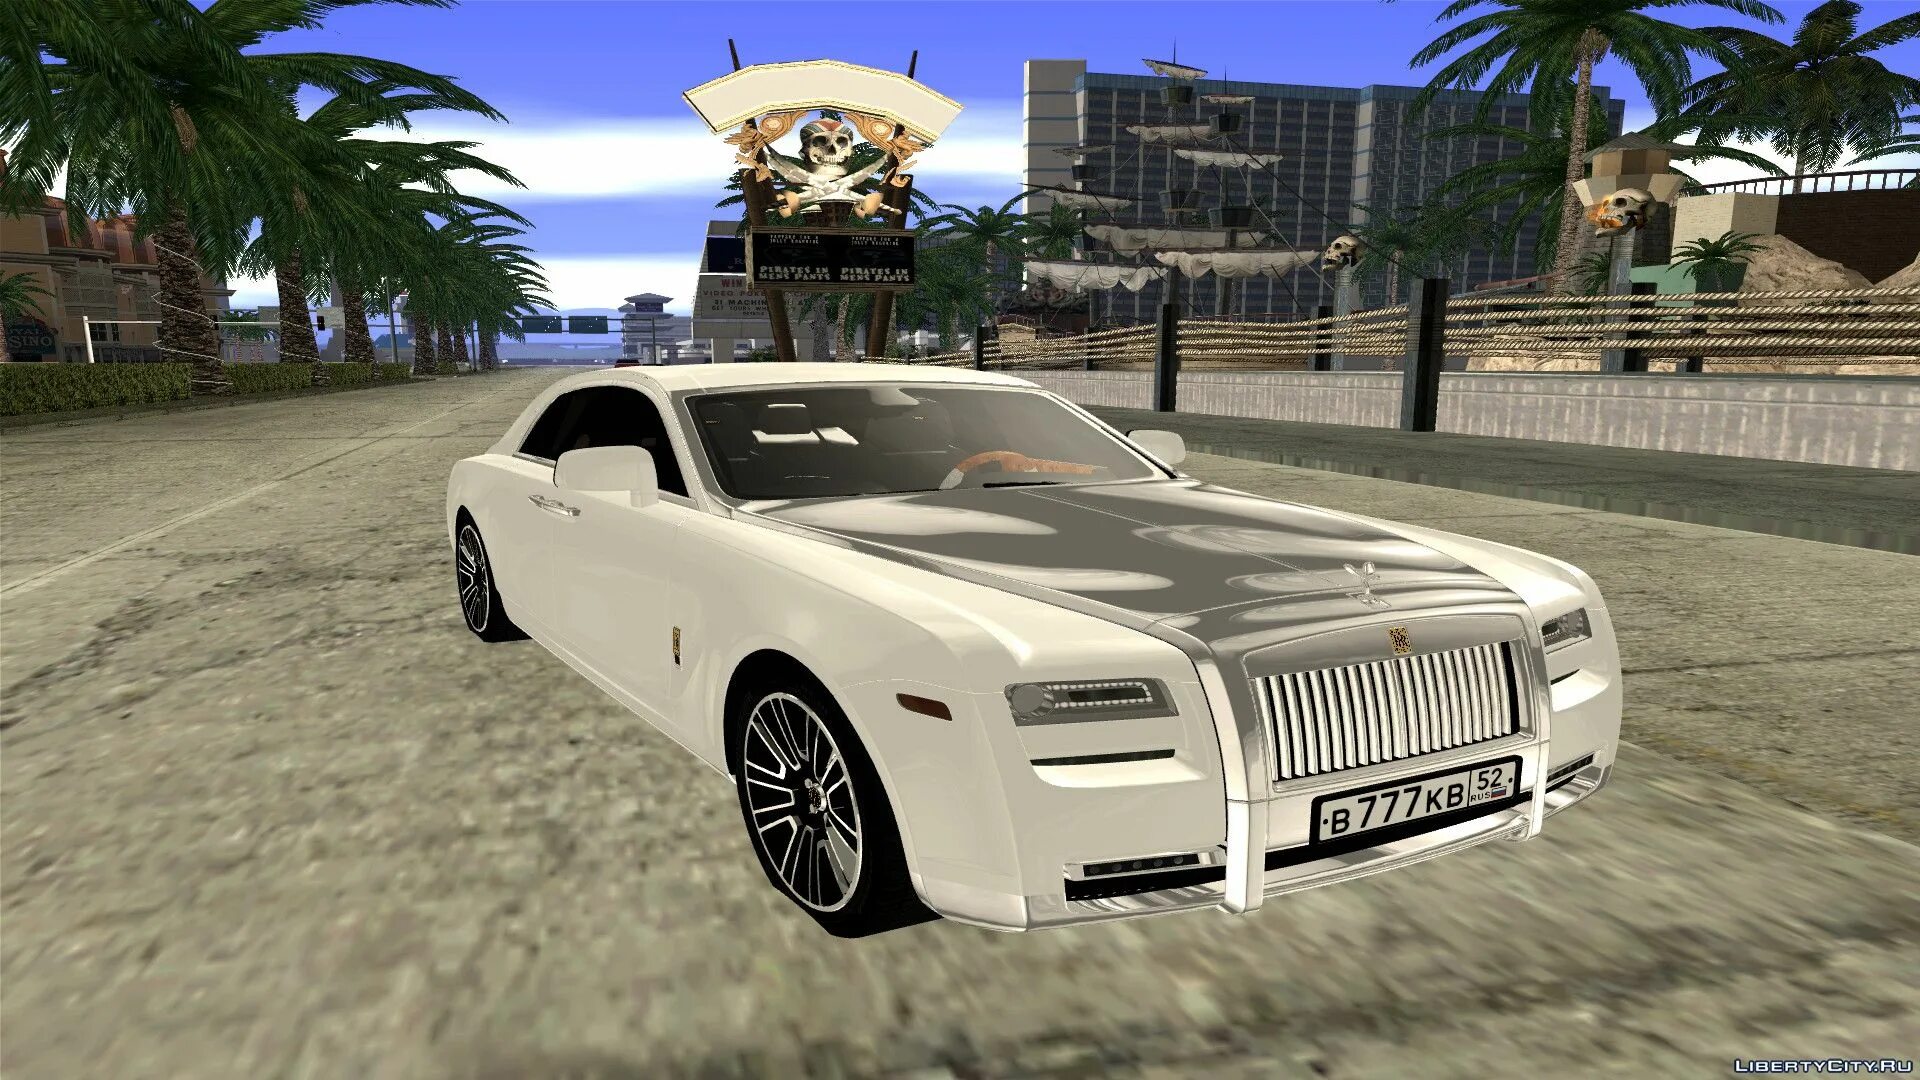 Rolls Royce GTA San Andreas. Файлы для GTA San Andreas: машины,. ГТА Сан машина Rolls Royce. Ашгабат GTA. San andreas тачки